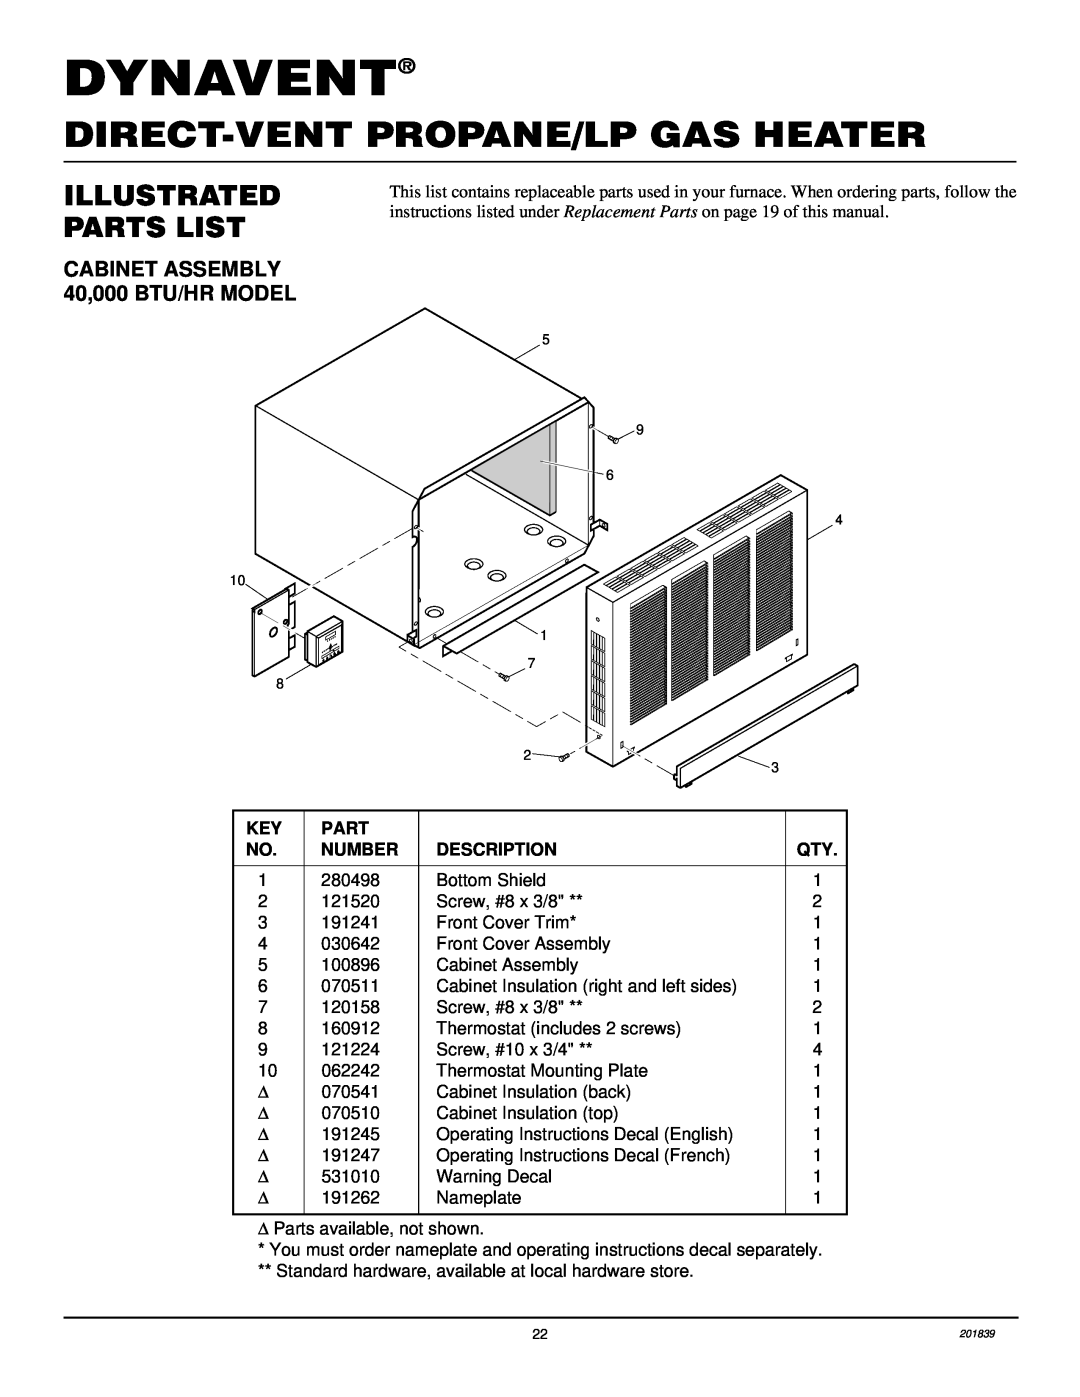 Desa DNV25PB Dynavent, Direct-Ventpropane/Lp Gas Heater, Illustrated Parts List, CABINET ASSEMBLY 40,000 BTU/HR MODEL 